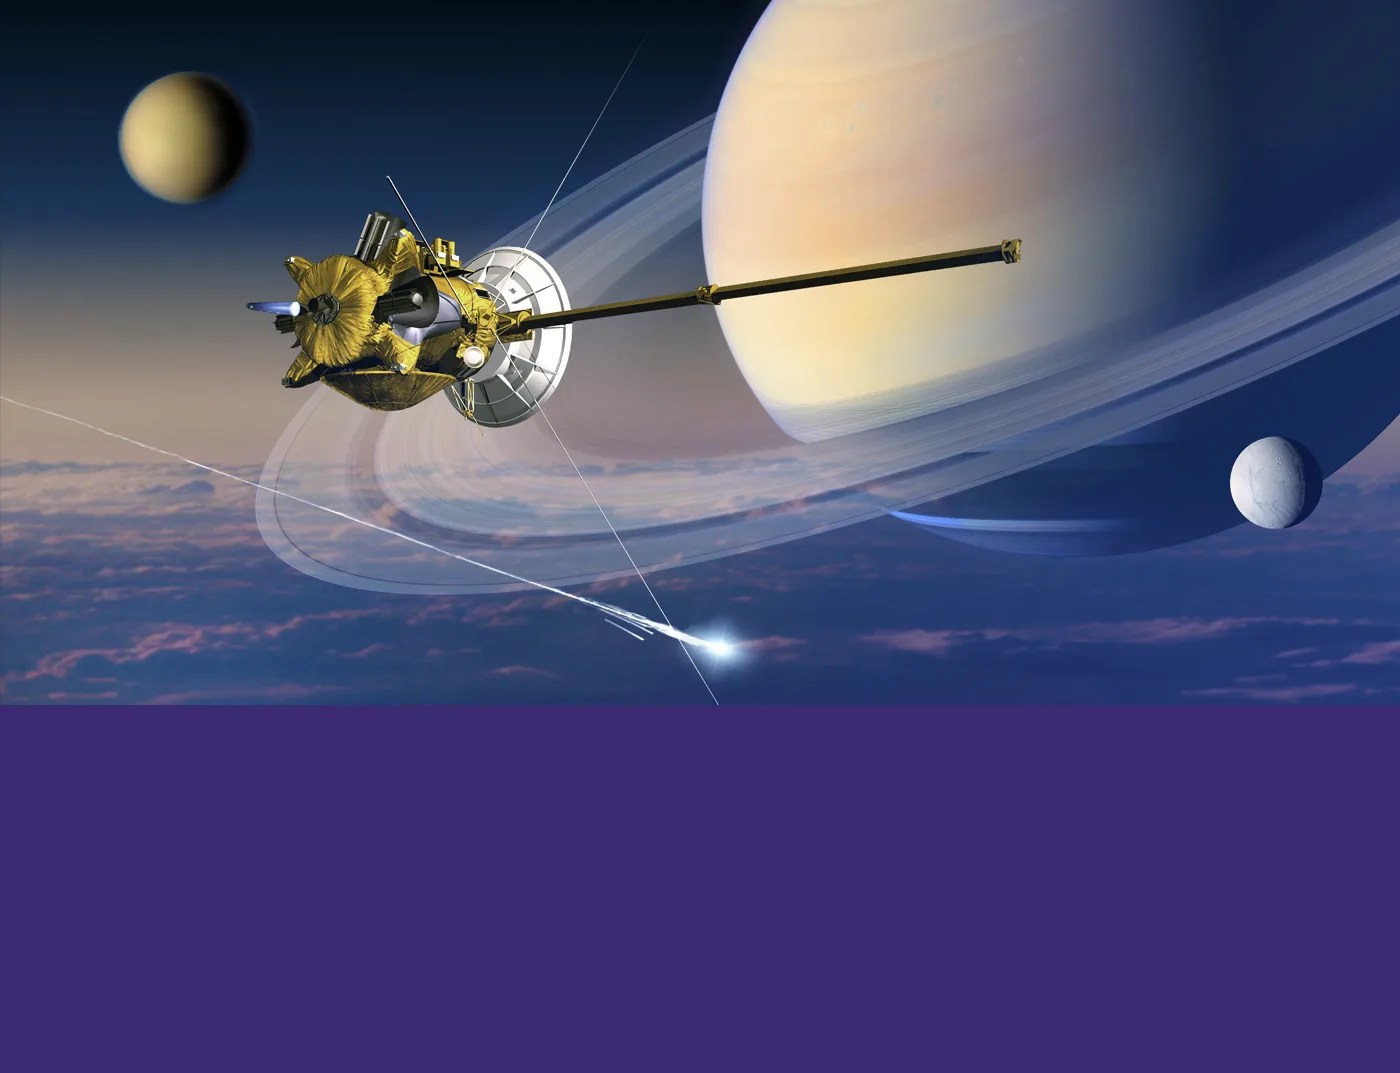 Artwork of Cassini spacecraft and Saturn